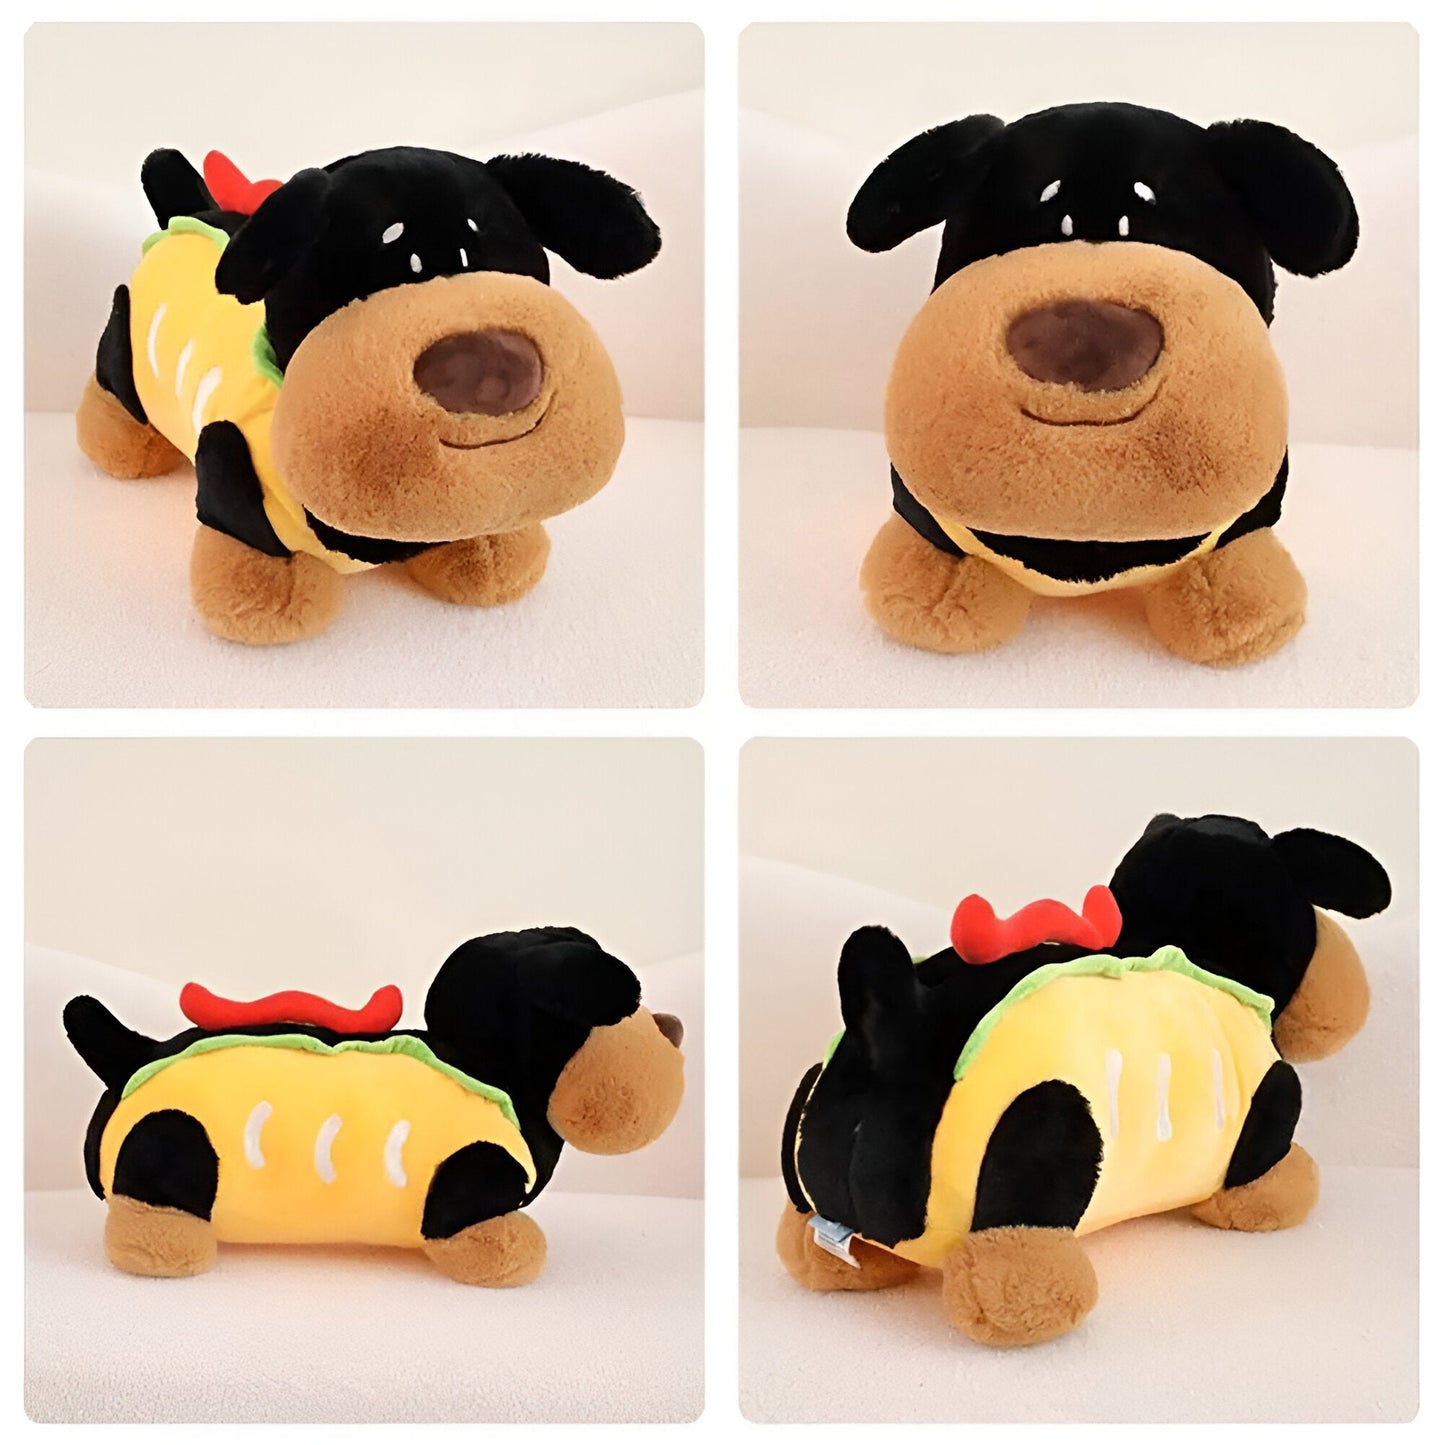 Hot Dog Dachshund Plush Toy | The Best Dachshund Gifts